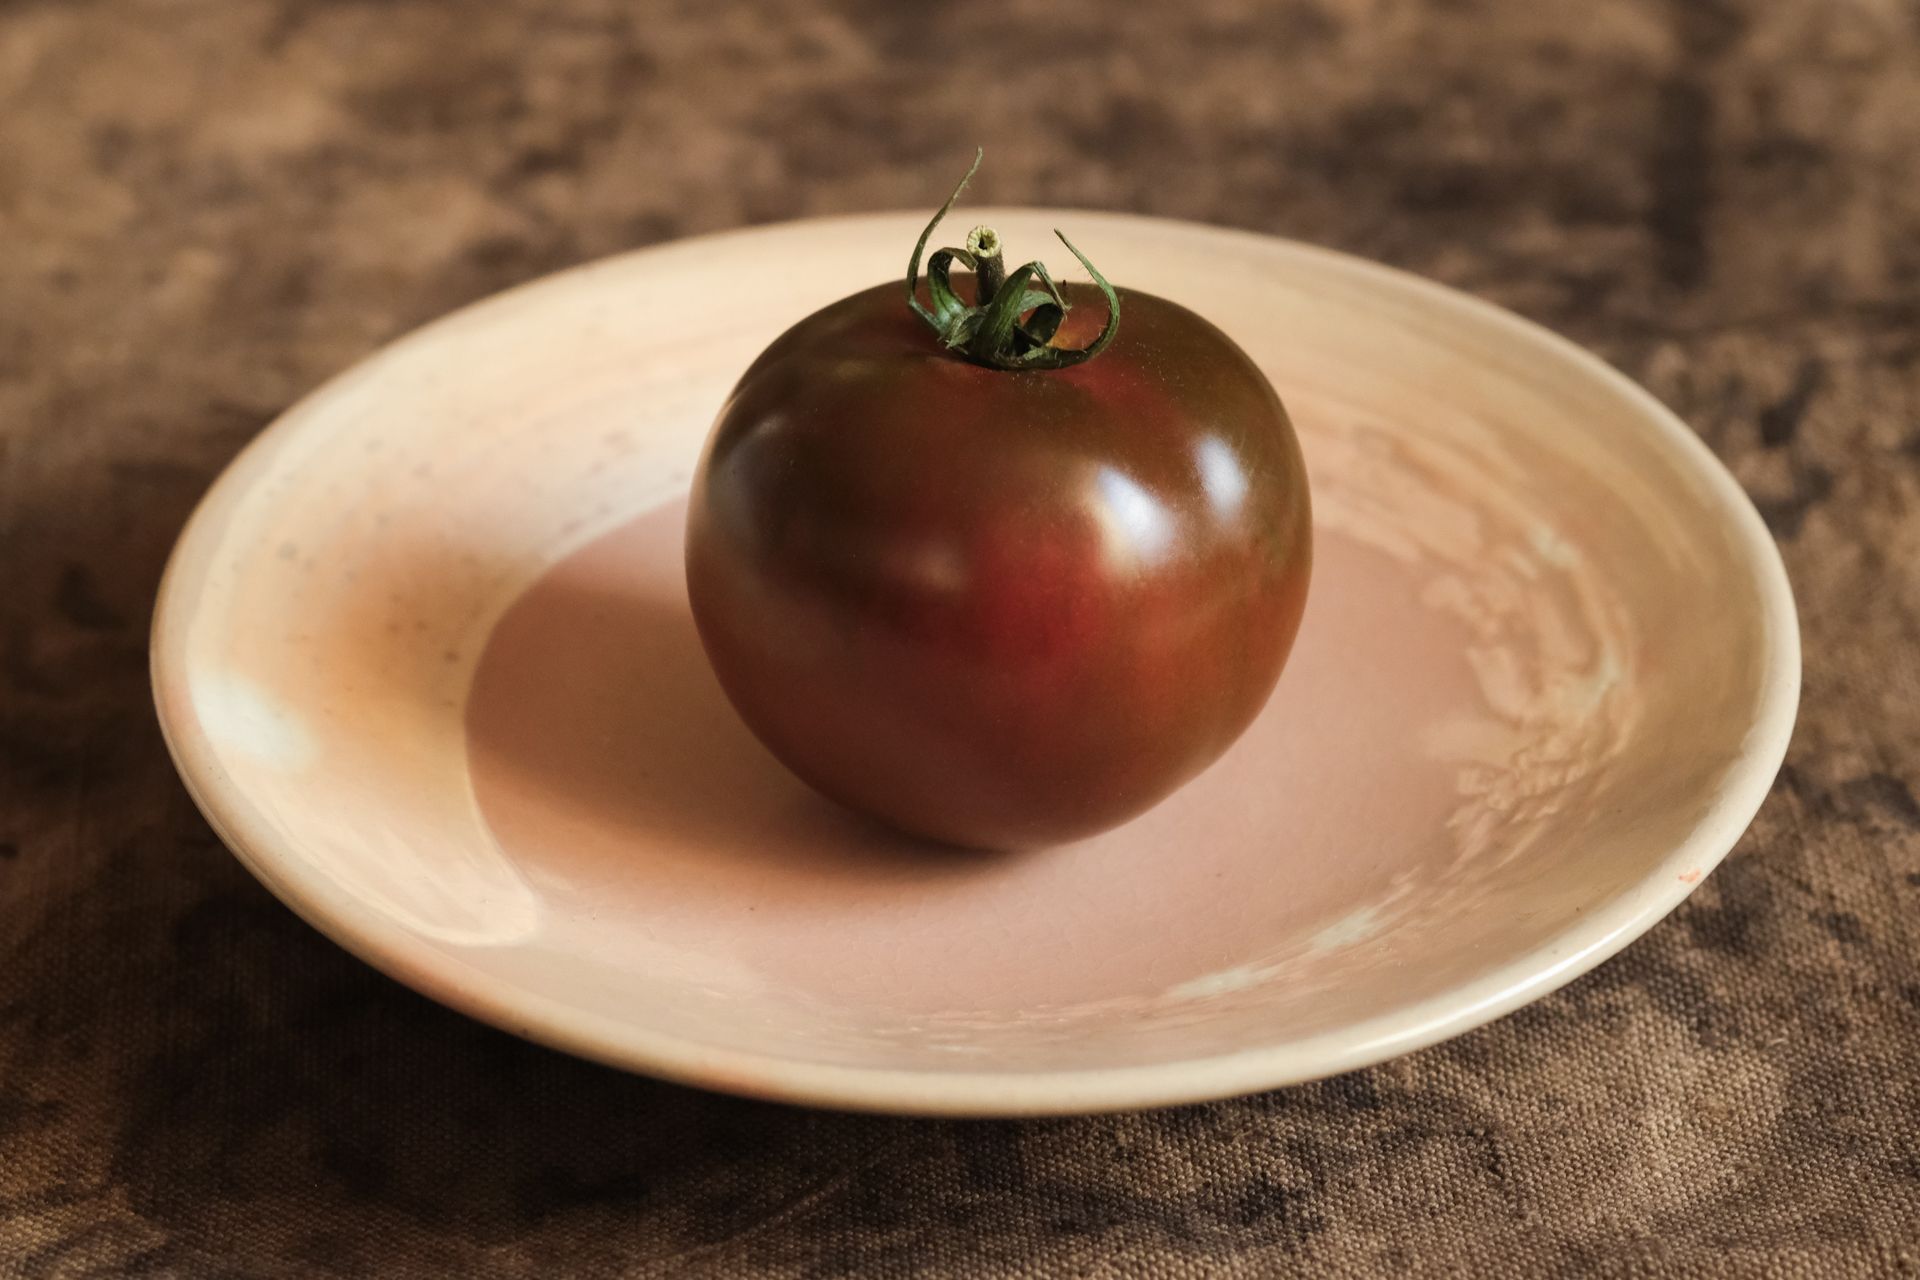 Tomatoes on Japanese ceramic plates taste better